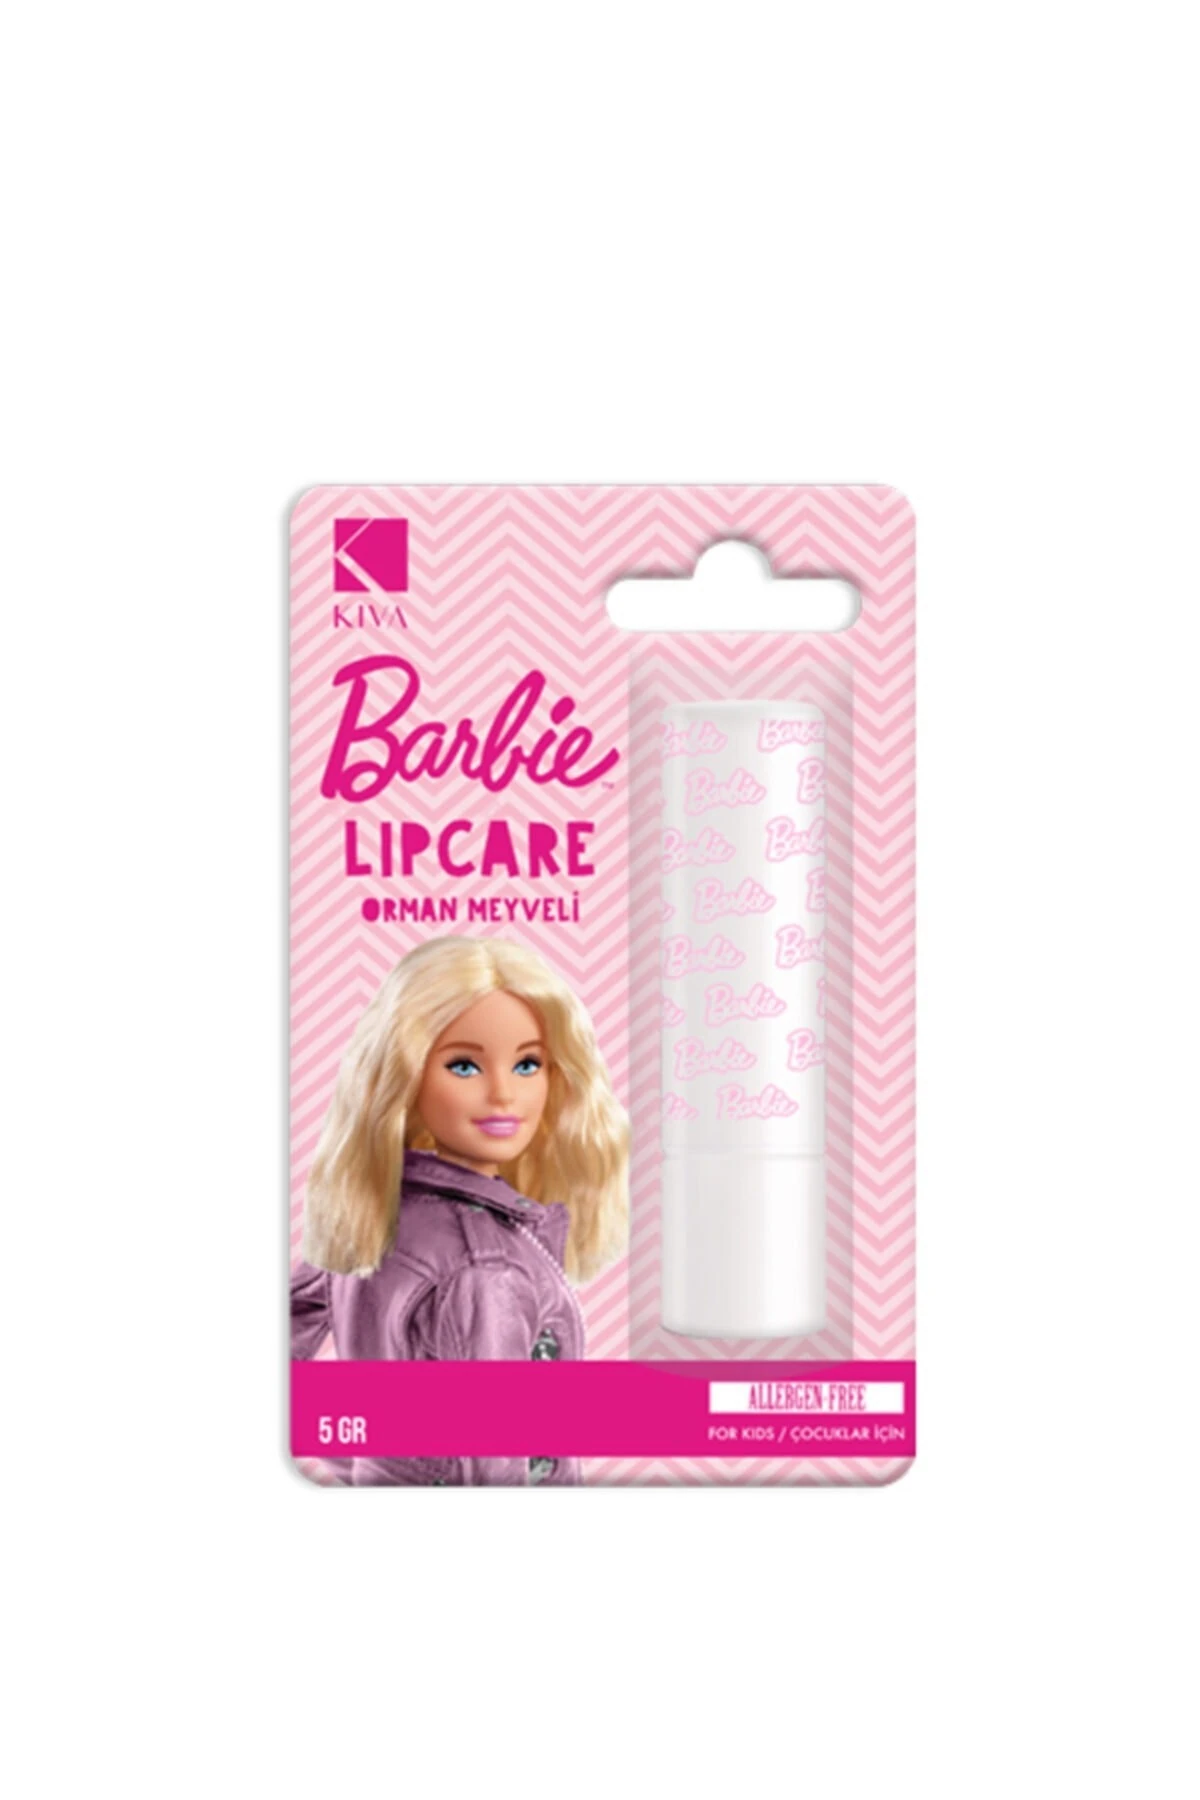 Barbie Lip Balm Orman Meyveli 5 Gr